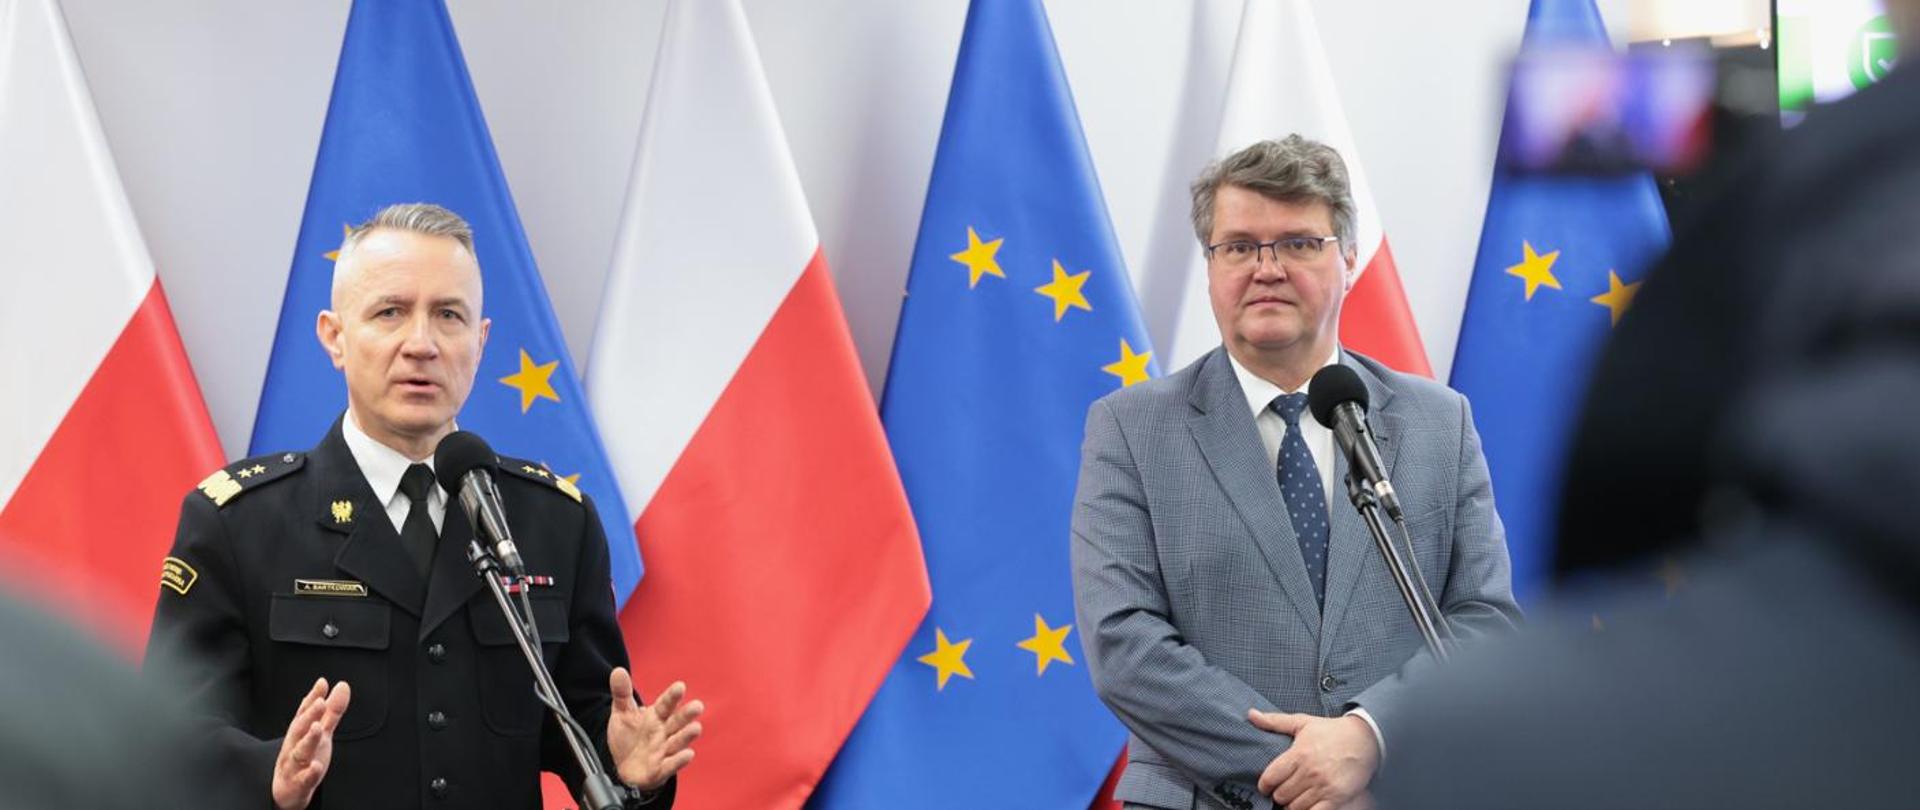 Na tle flag rzeczypospolitej Polskiej oraz Unii Europejskiej stoi dwóch mężczyzn. Z lewej strony w mundurze wyjściowym - komendant główny PSP, z prawej - wiceminister spraw wewnętrznych i administracji.